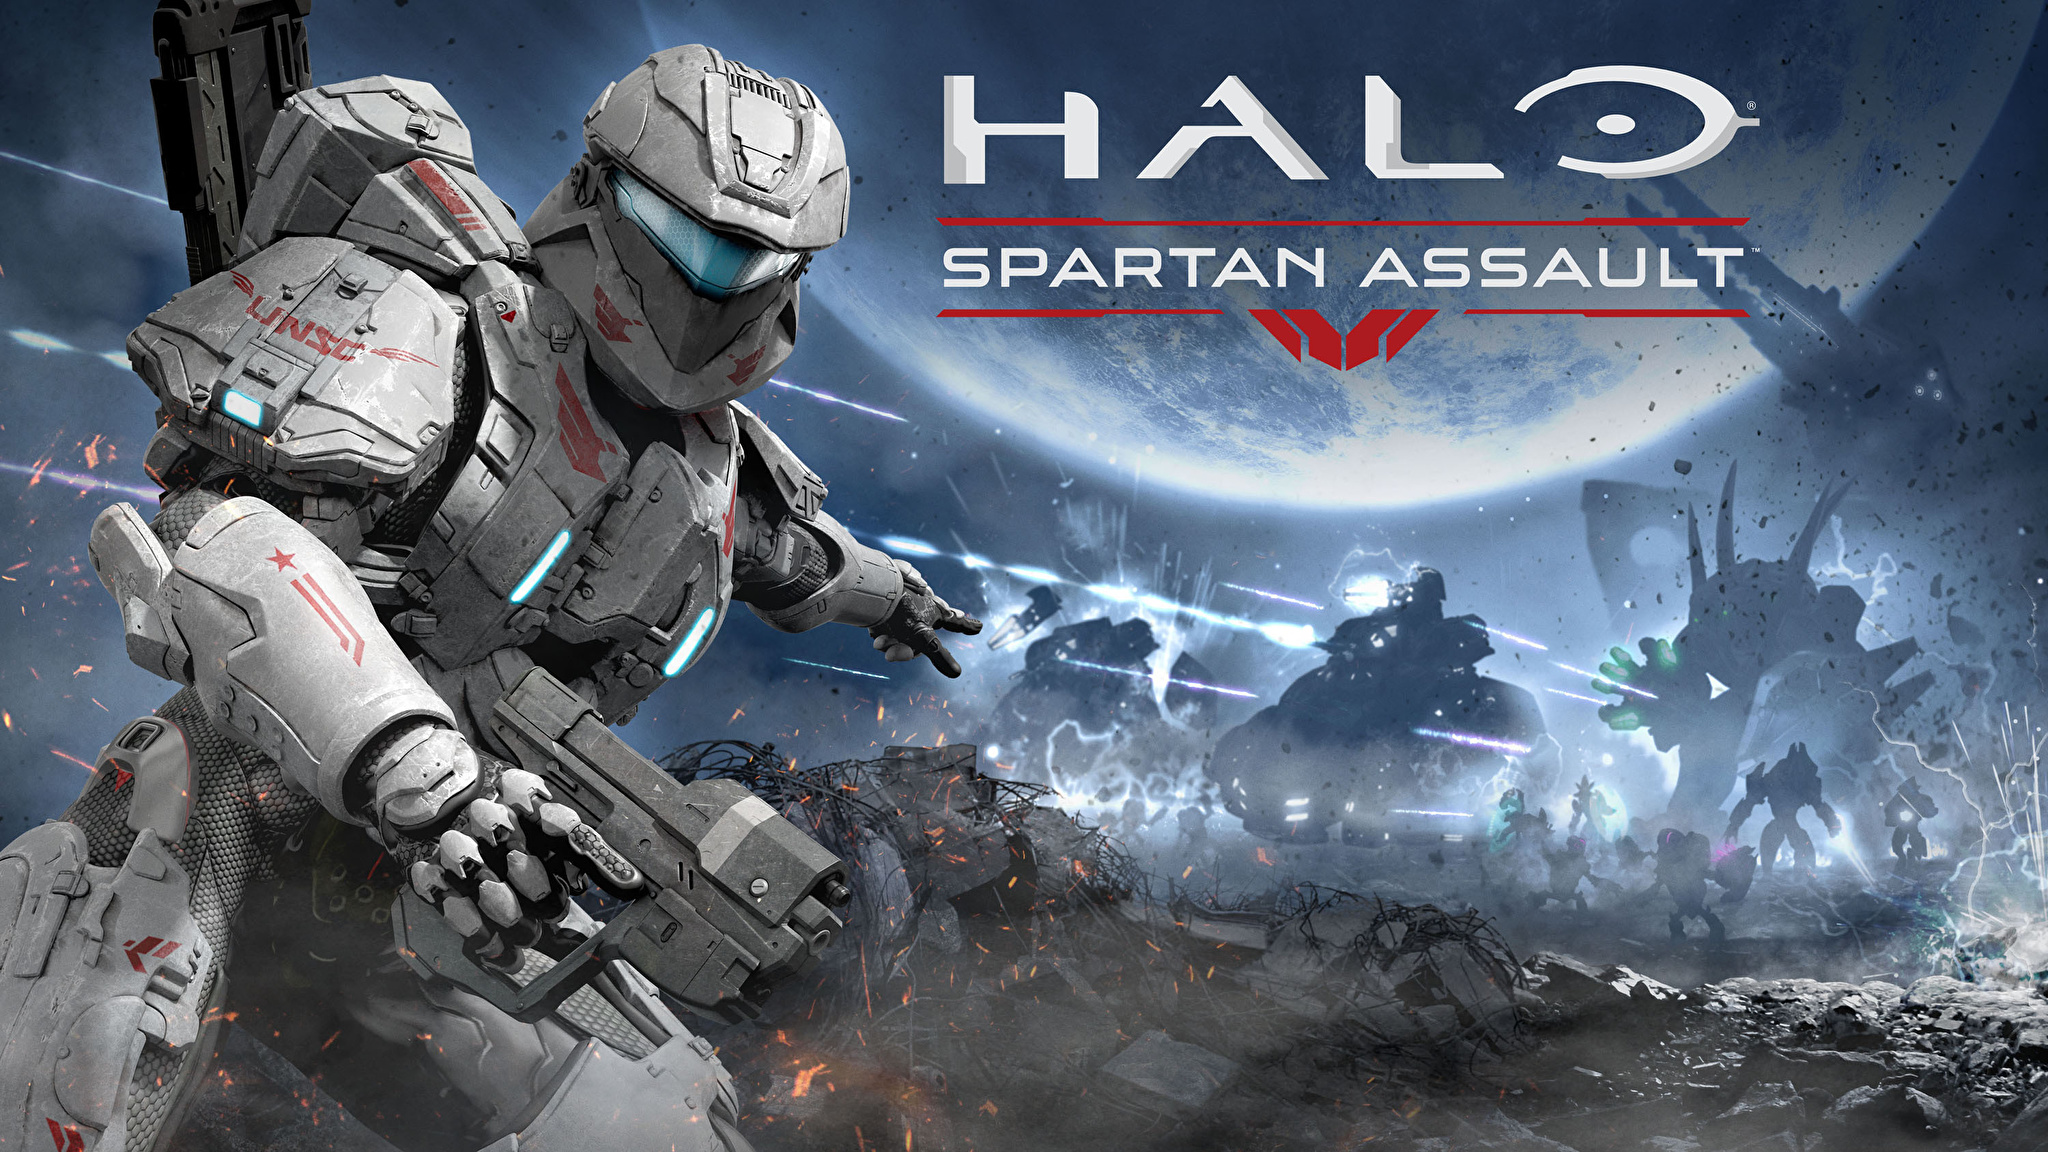 Halo Солдаты Воители Битвы spartan assault Шлем Доспехи Игры фото 2048x1152...